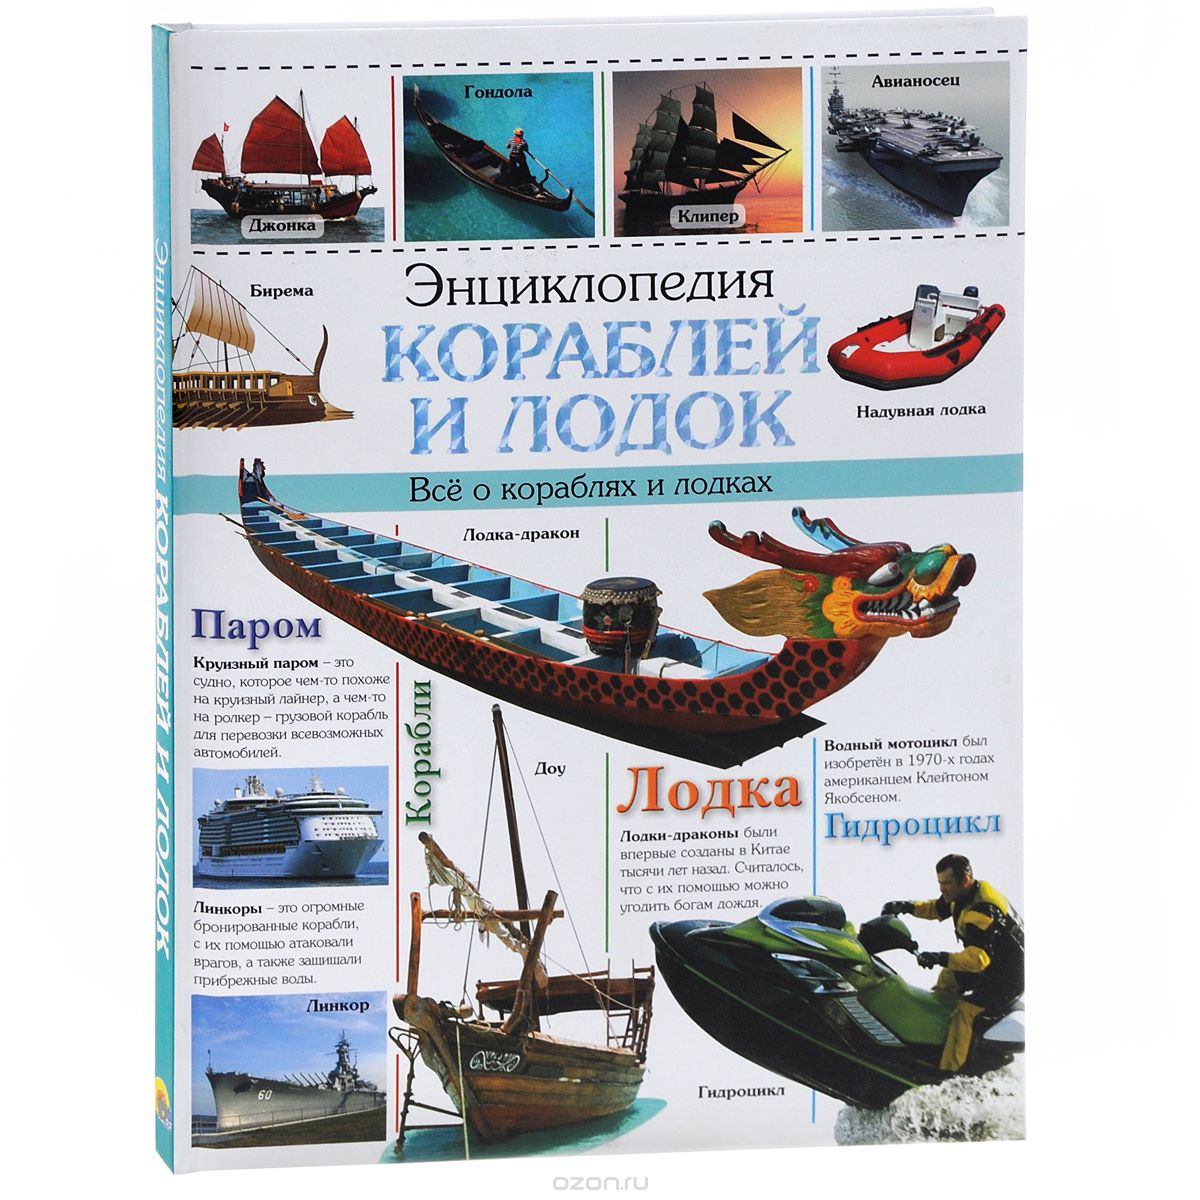 Скачать книгу "Энциклопедия кораблей и лодок. Все о кораблях и лодках"